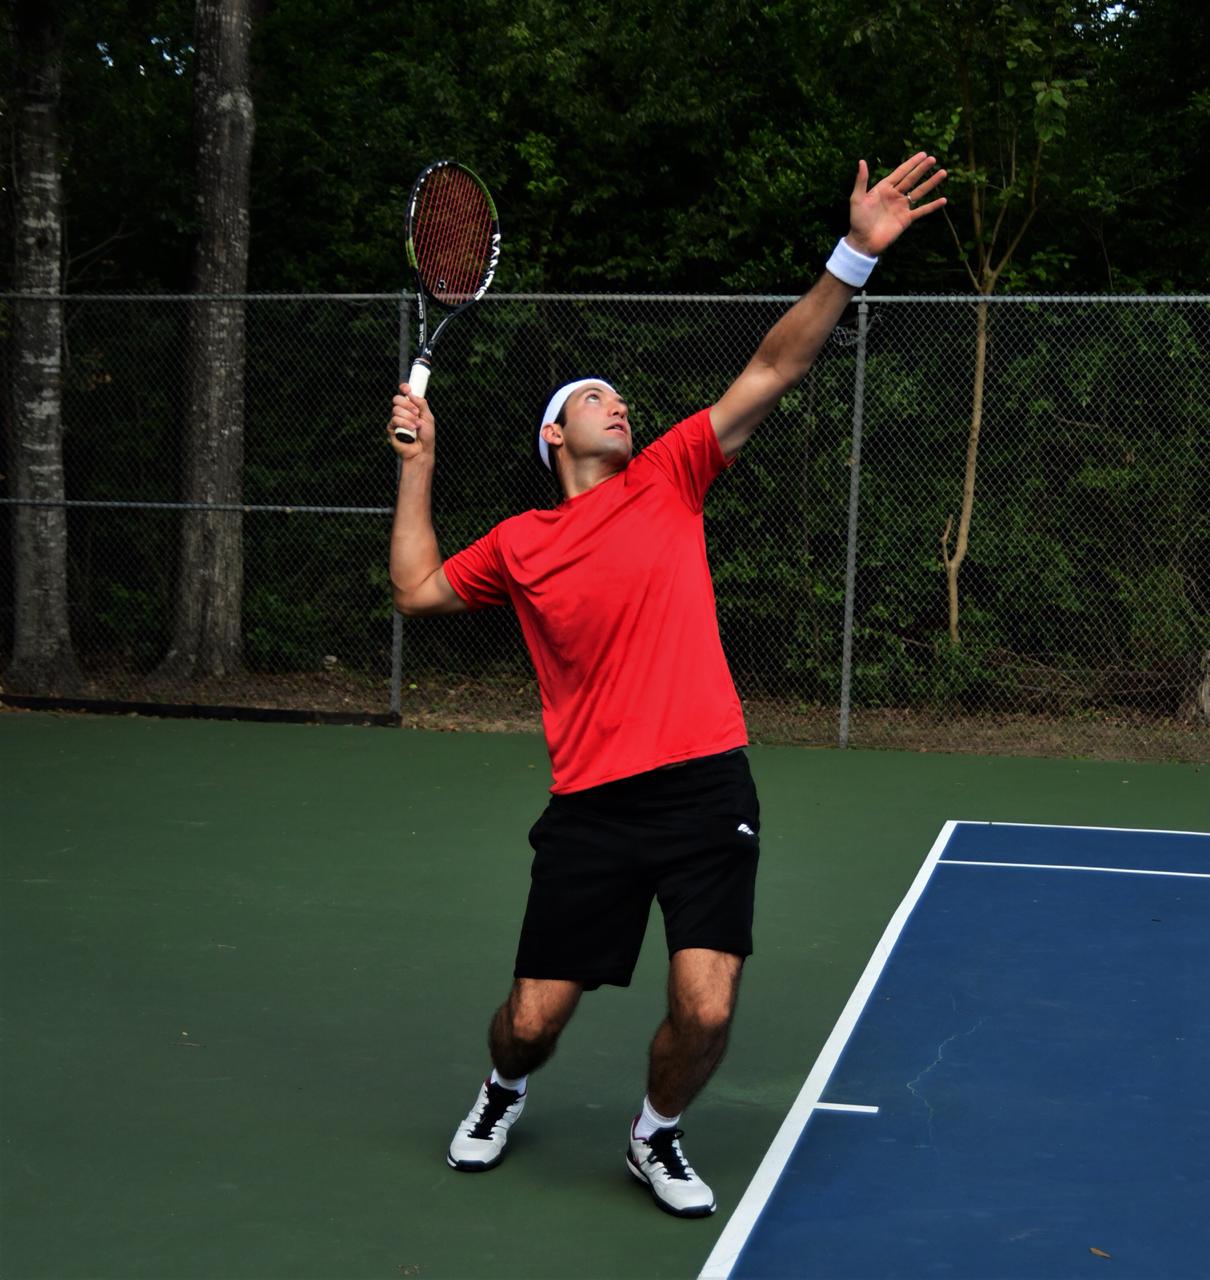 Eugenio K. teaches tennis lessons in Houston, TX